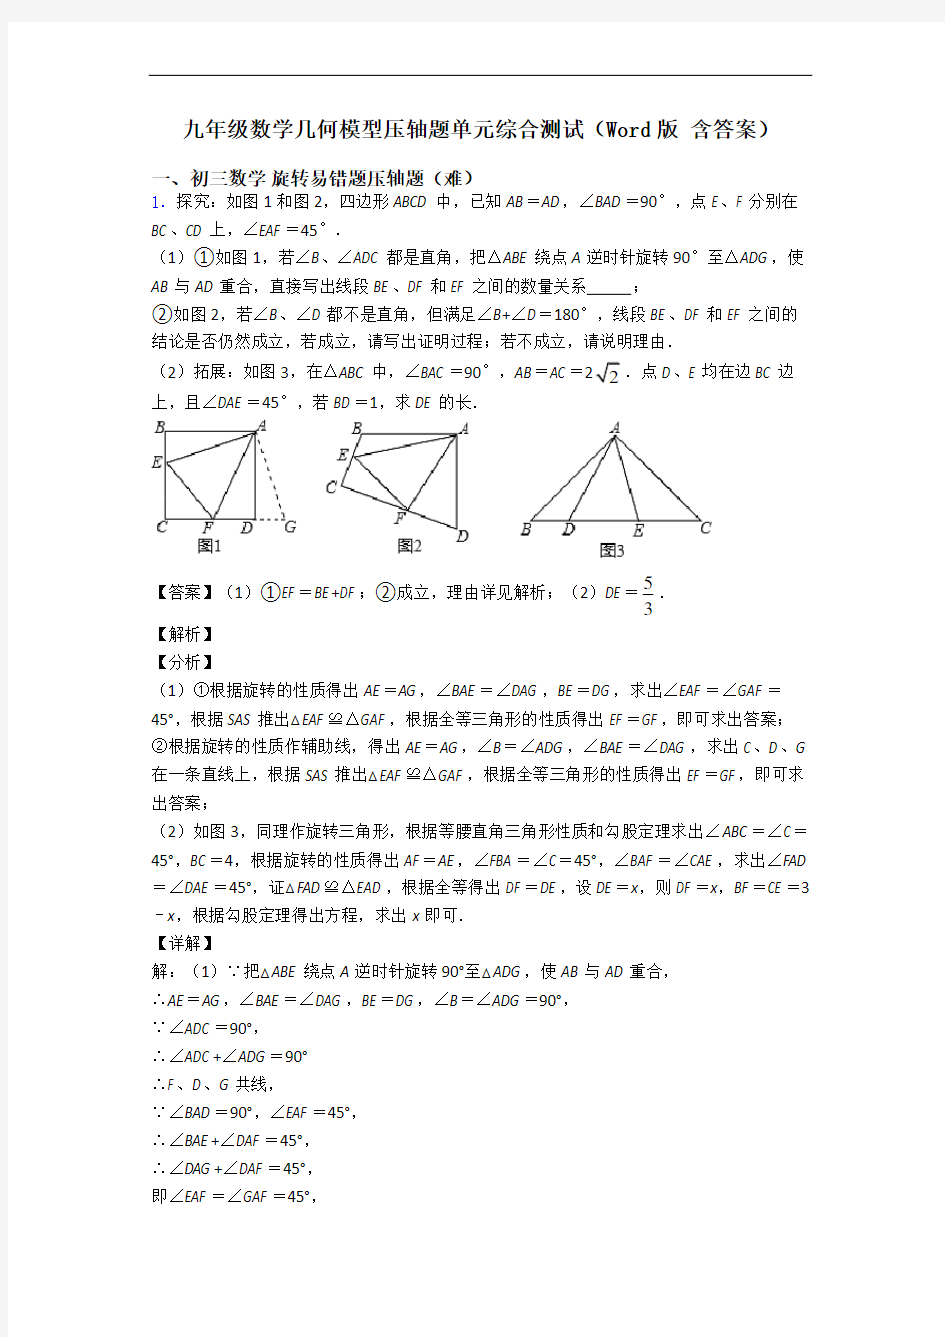 九年级数学几何模型压轴题单元综合测试(Word版 含答案)